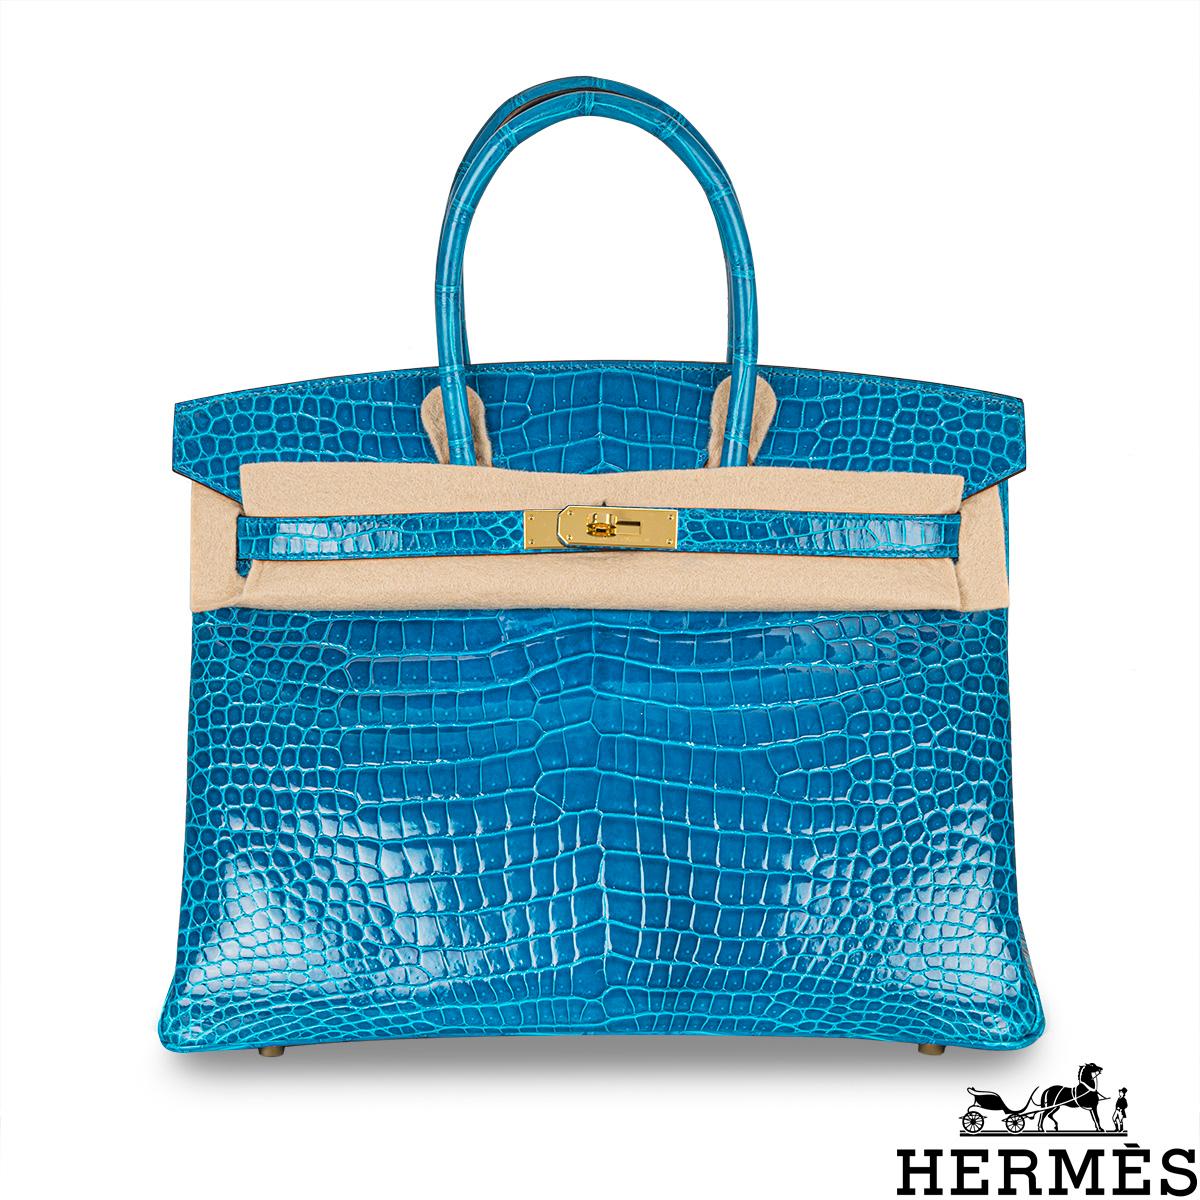 Un incroyable sac Hermès Birkin de 35 cm. L'extérieur de ce Birkin exotique est en crocodile poreux Bleu Izmir brillant avec des surpiqûres ton sur ton. Il est orné de matériel de couleur dorée, de deux poignées supérieures et d'une fermeture à